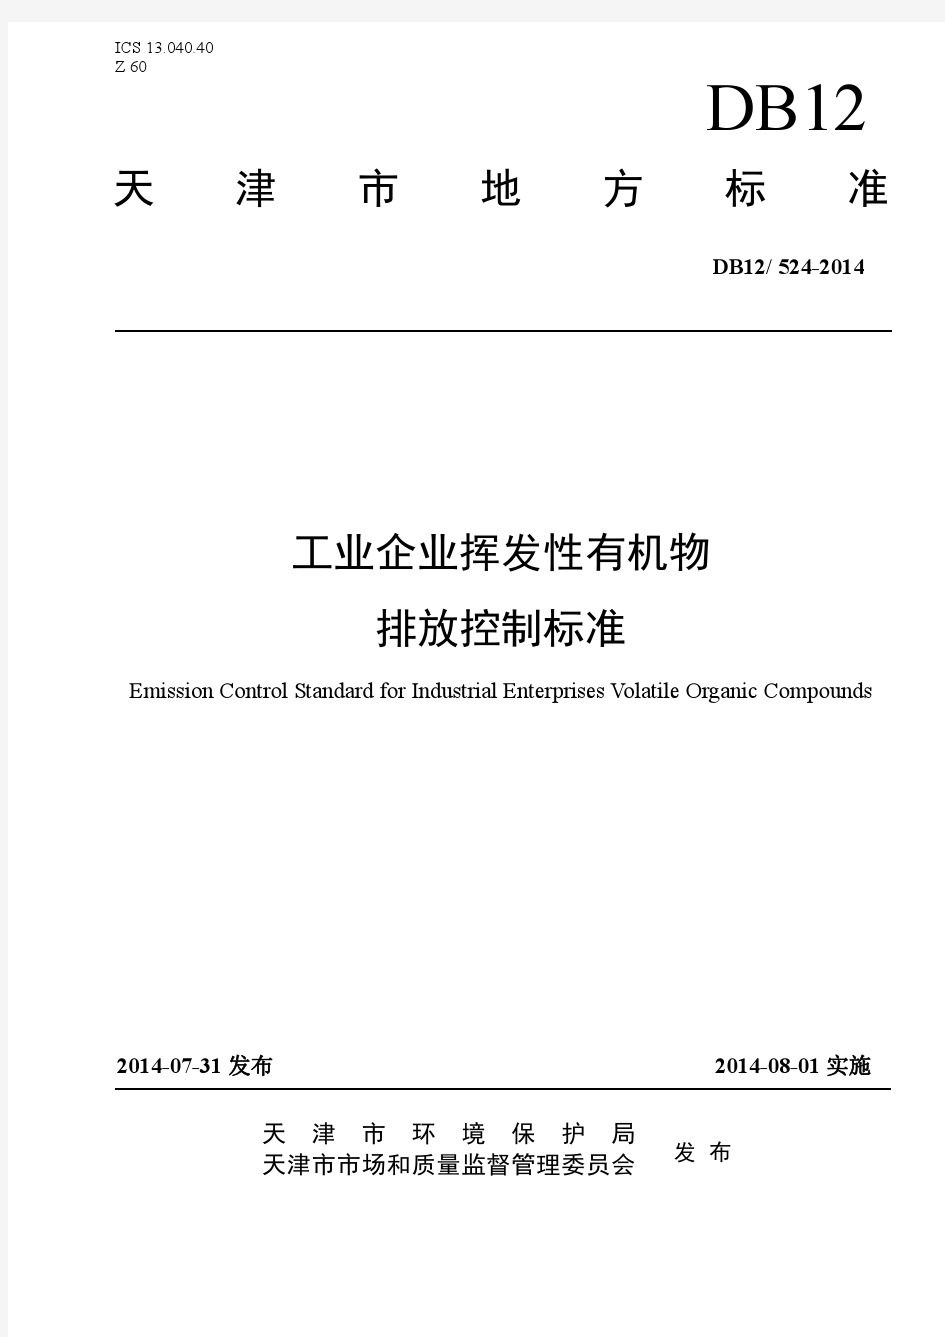 DB12 524-2006天津市工业企业挥发性有机物排放控制标准